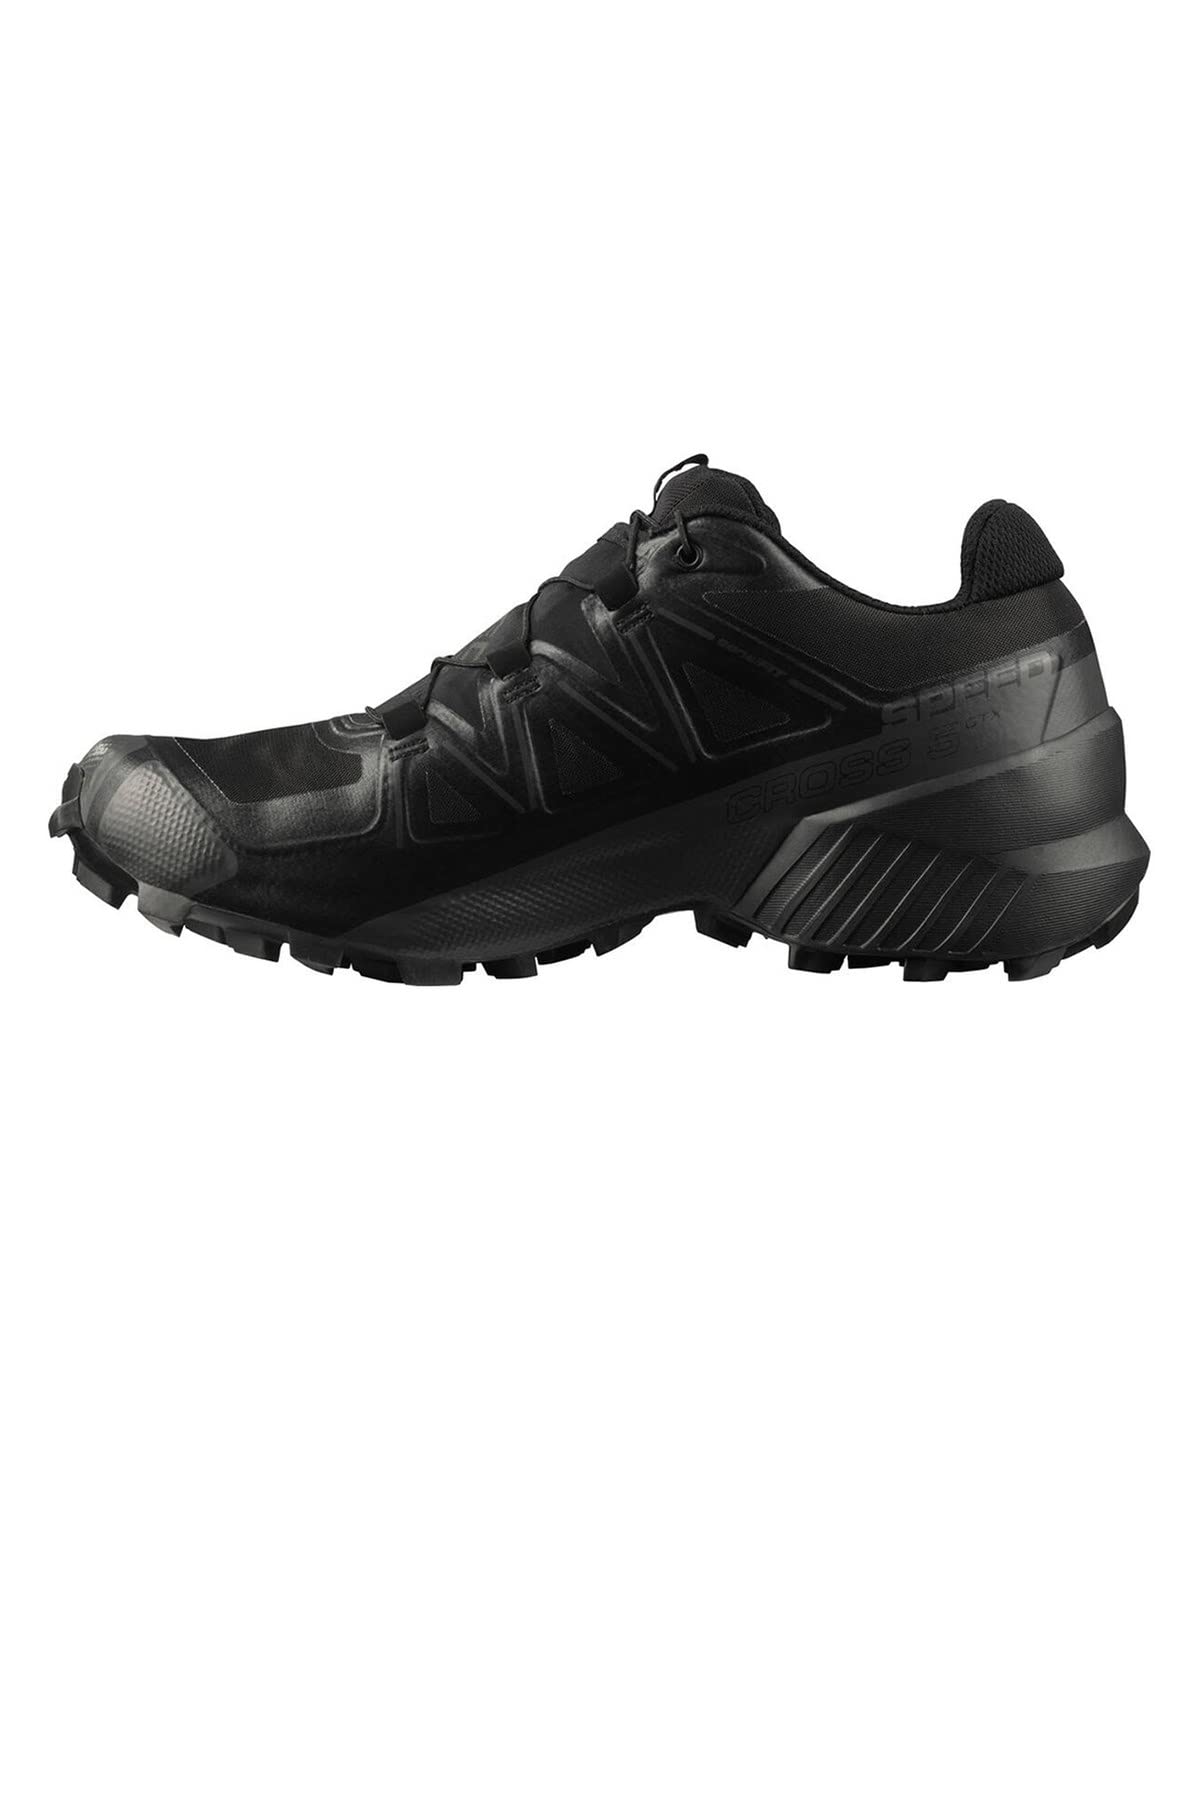 Salomon Speedcross 5 Gore-Tex Herren Trail Running Schuhe, Wetterschutz, Aggressiver Grip, Präzise Passform, Black, 45 1/3